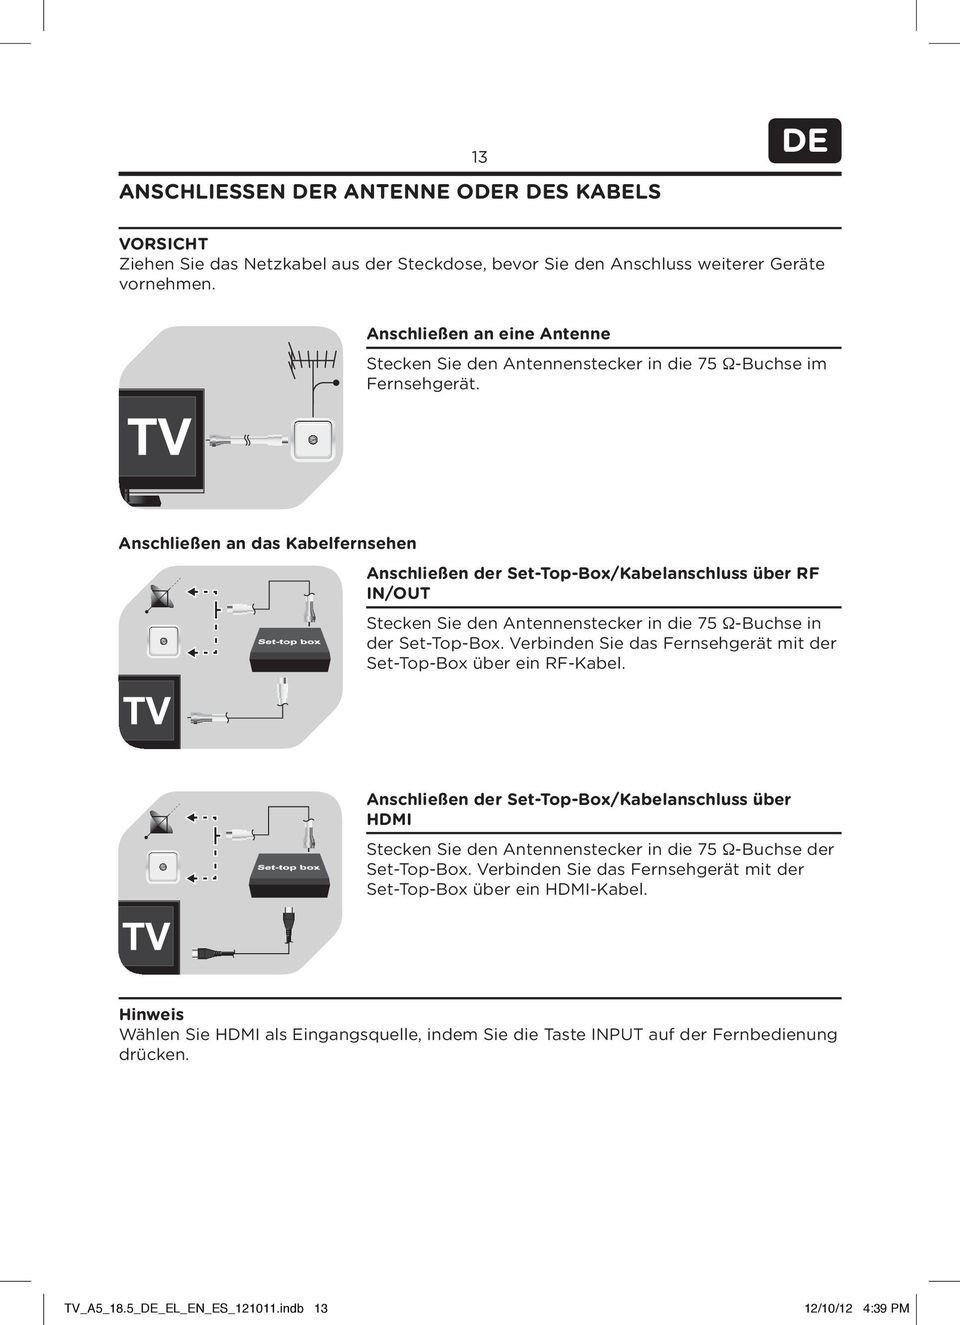 Anschließen an das Kabelfernsehen Anschließen der Set-Top-Box/Kabelanschluss über RF IN/OUT Stecken Sie den Antennenstecker in die 75 Ω-Buchse in der Set-Top-Box.